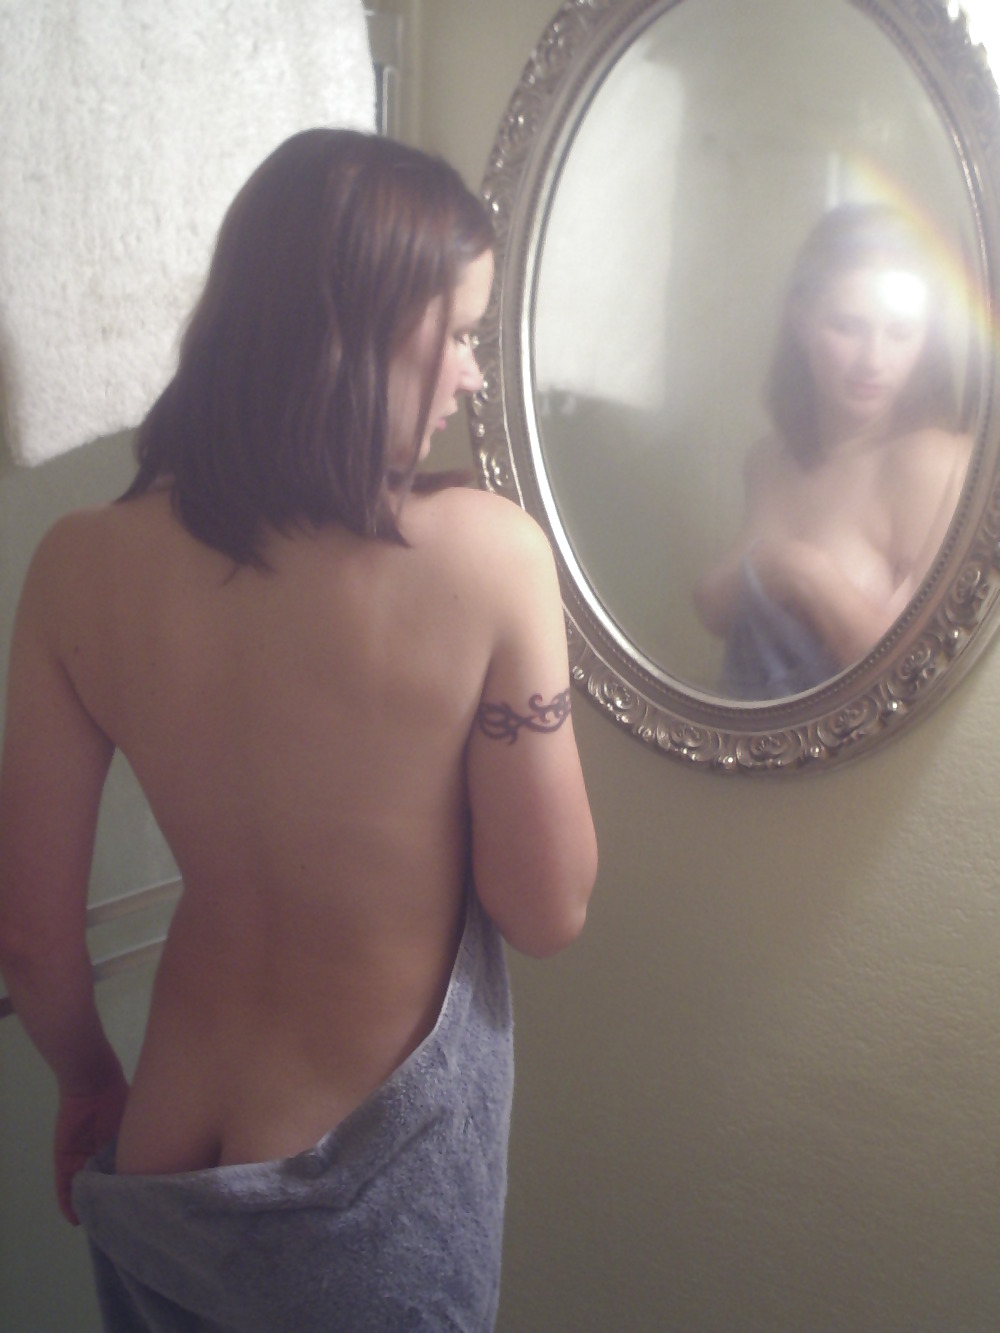 Девушка с татуировкой не прочь демонстрировать груди в душе 6 фотография